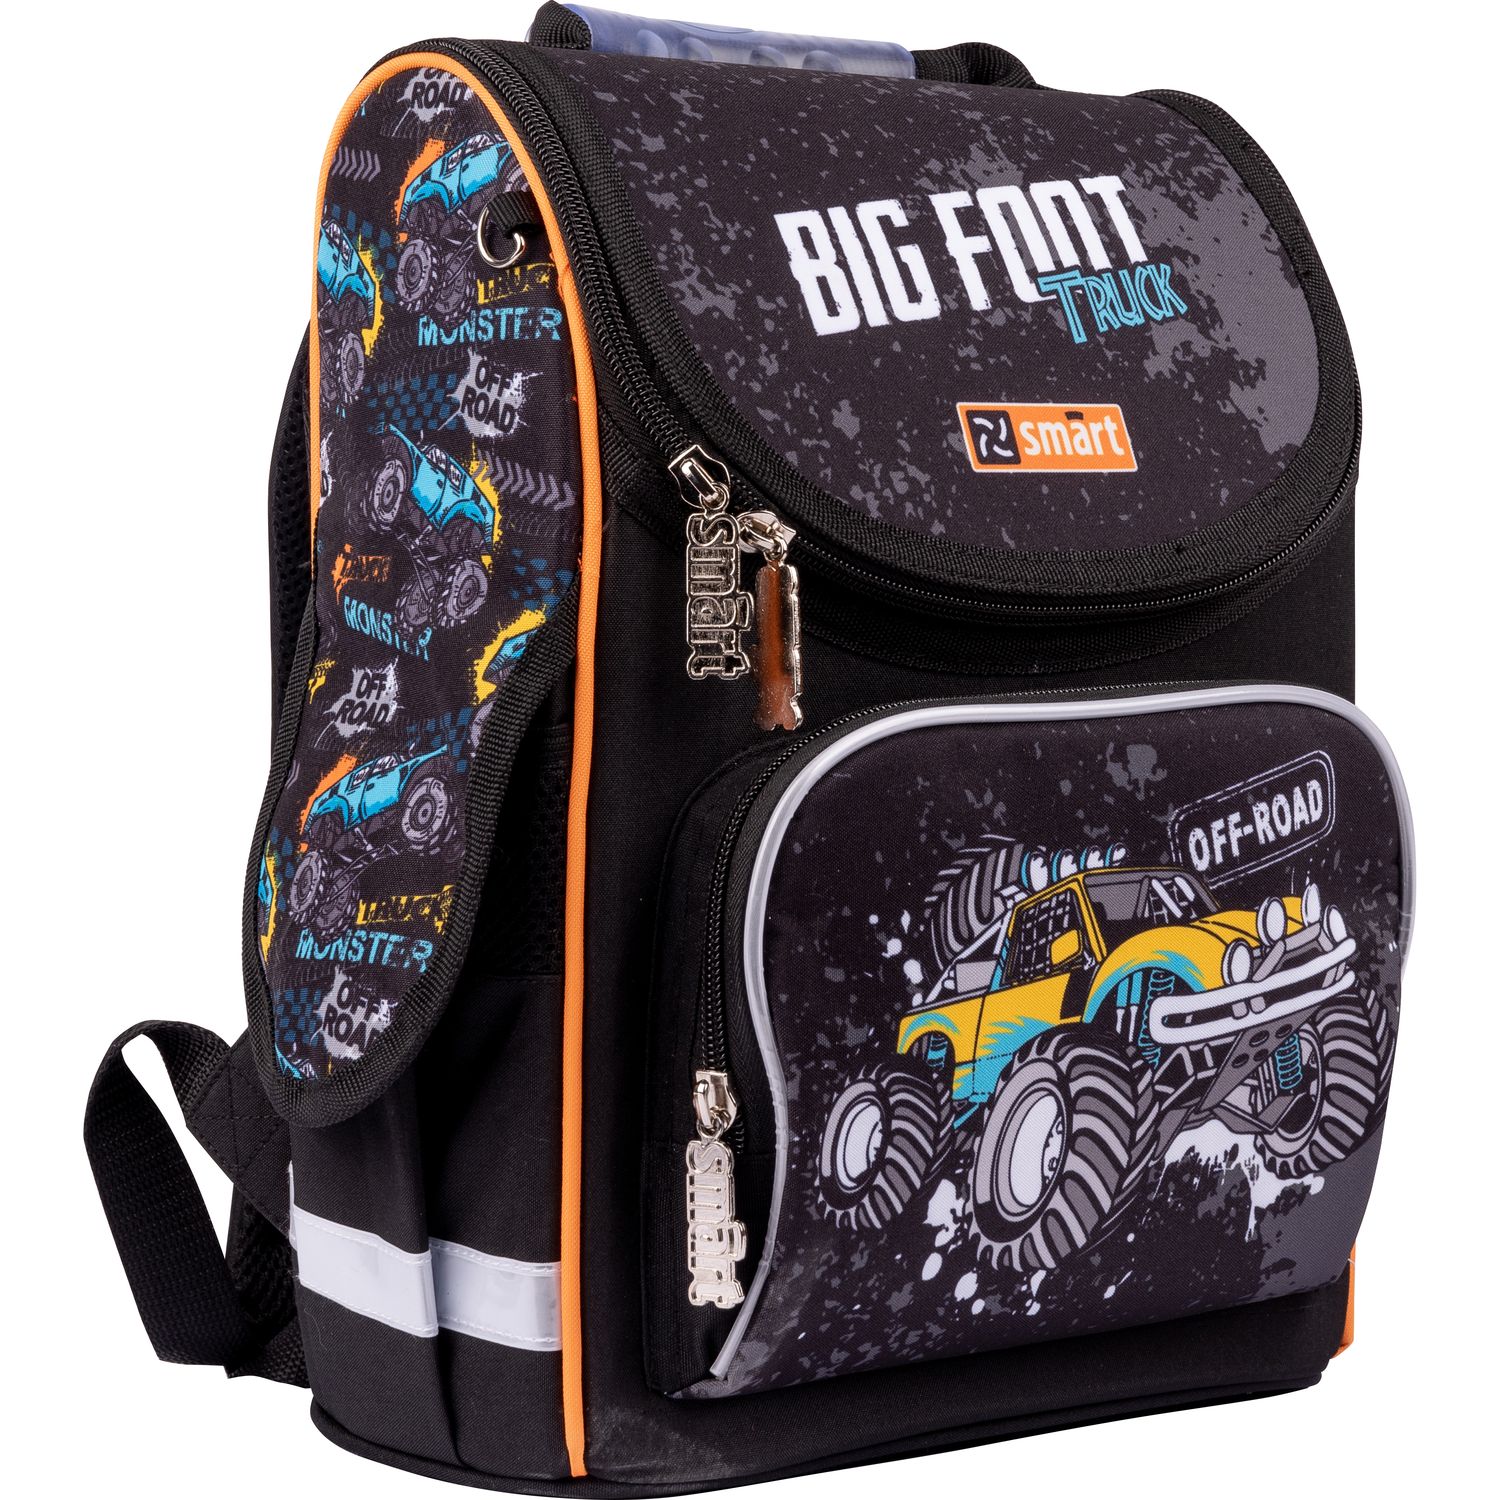 Рюкзак шкільний каркасний Smart PG-11 Big Foot, чорний (559009) - фото 2